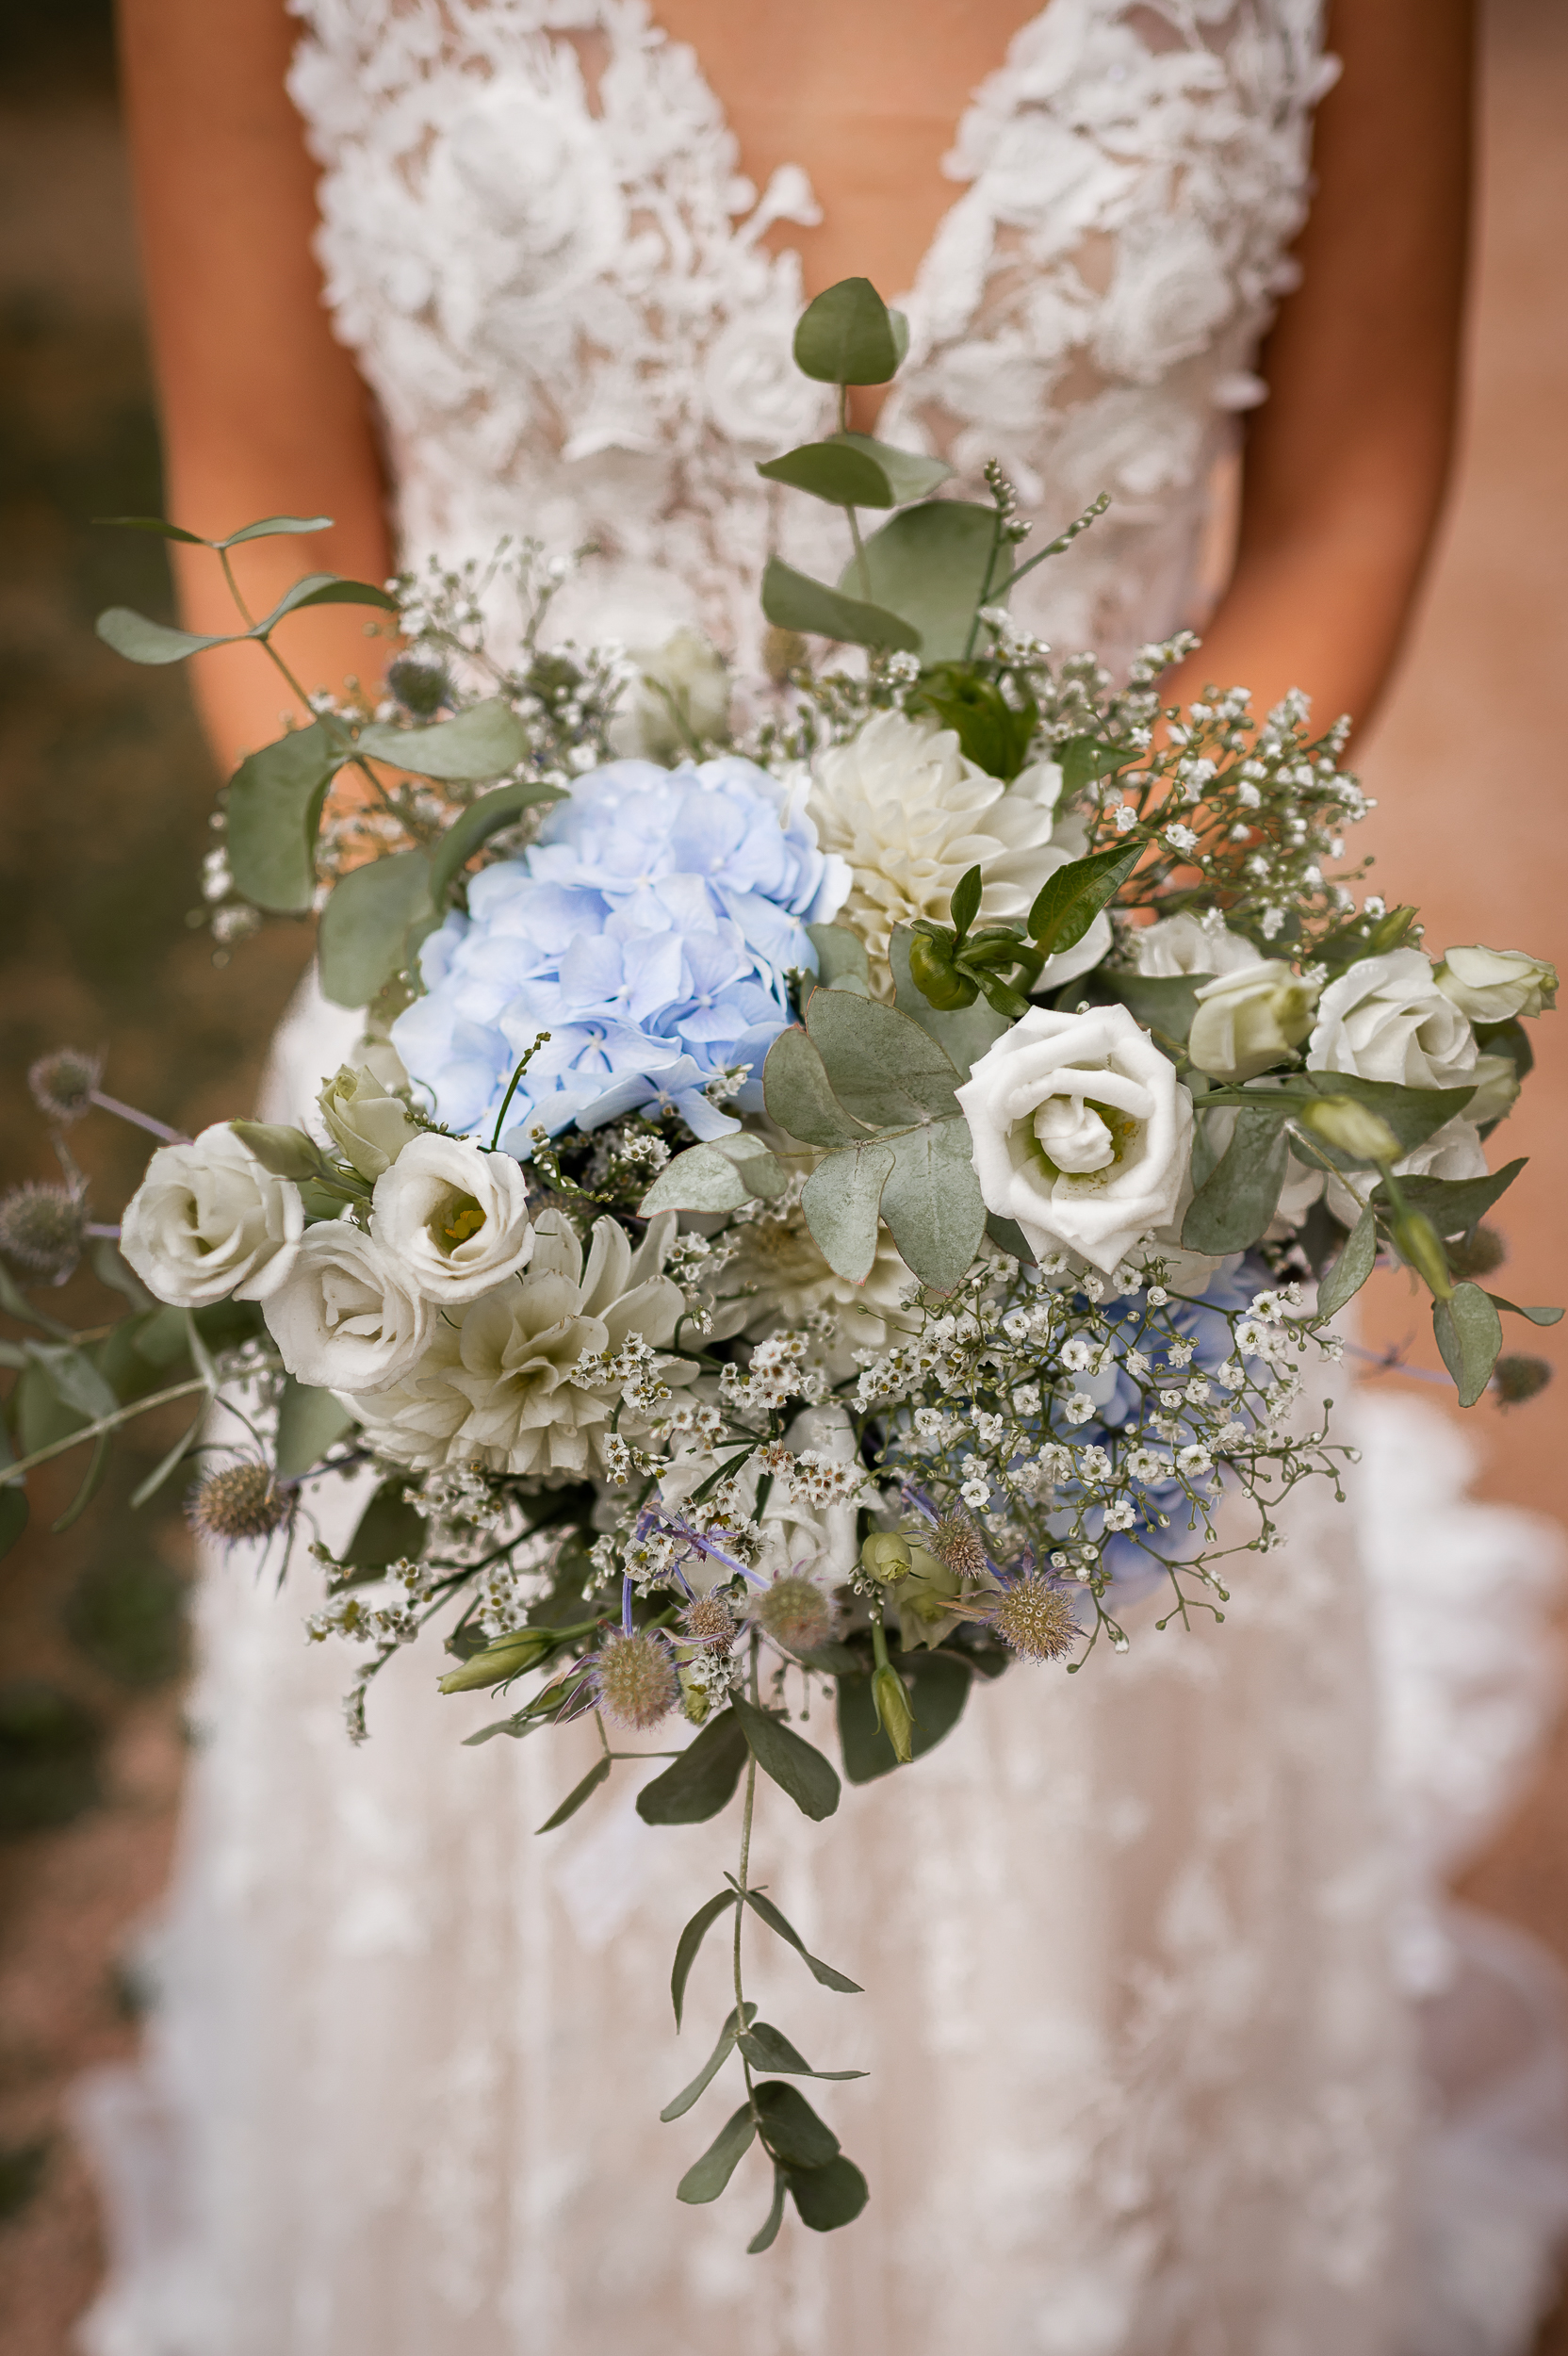 Nahaufnahme von einem Brautstrauß im Boho-Stil mit weißen Minirosen und hellblauen Hortensien, unscharf im Hintergrund ist das Spitzenkleid der Braut zu sehen.